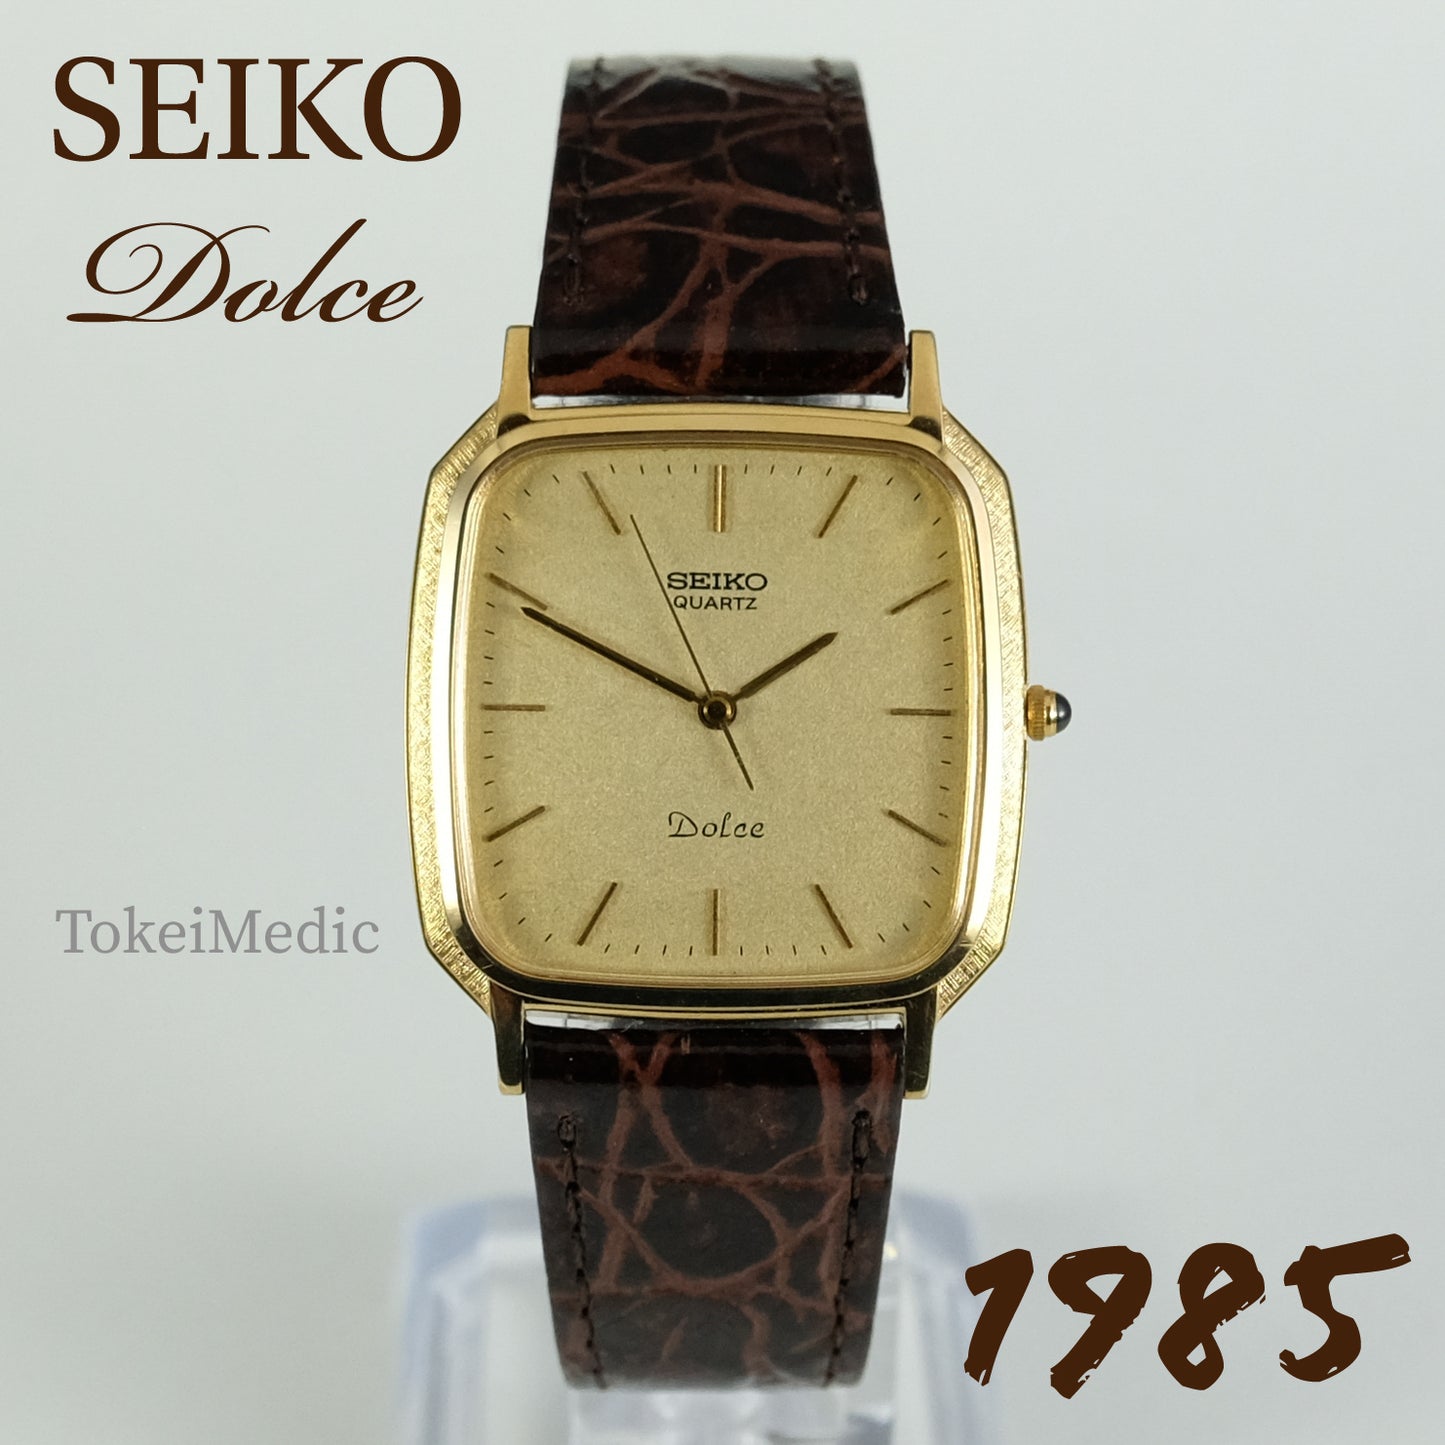 1985 Seiko Dolce 9531-5000